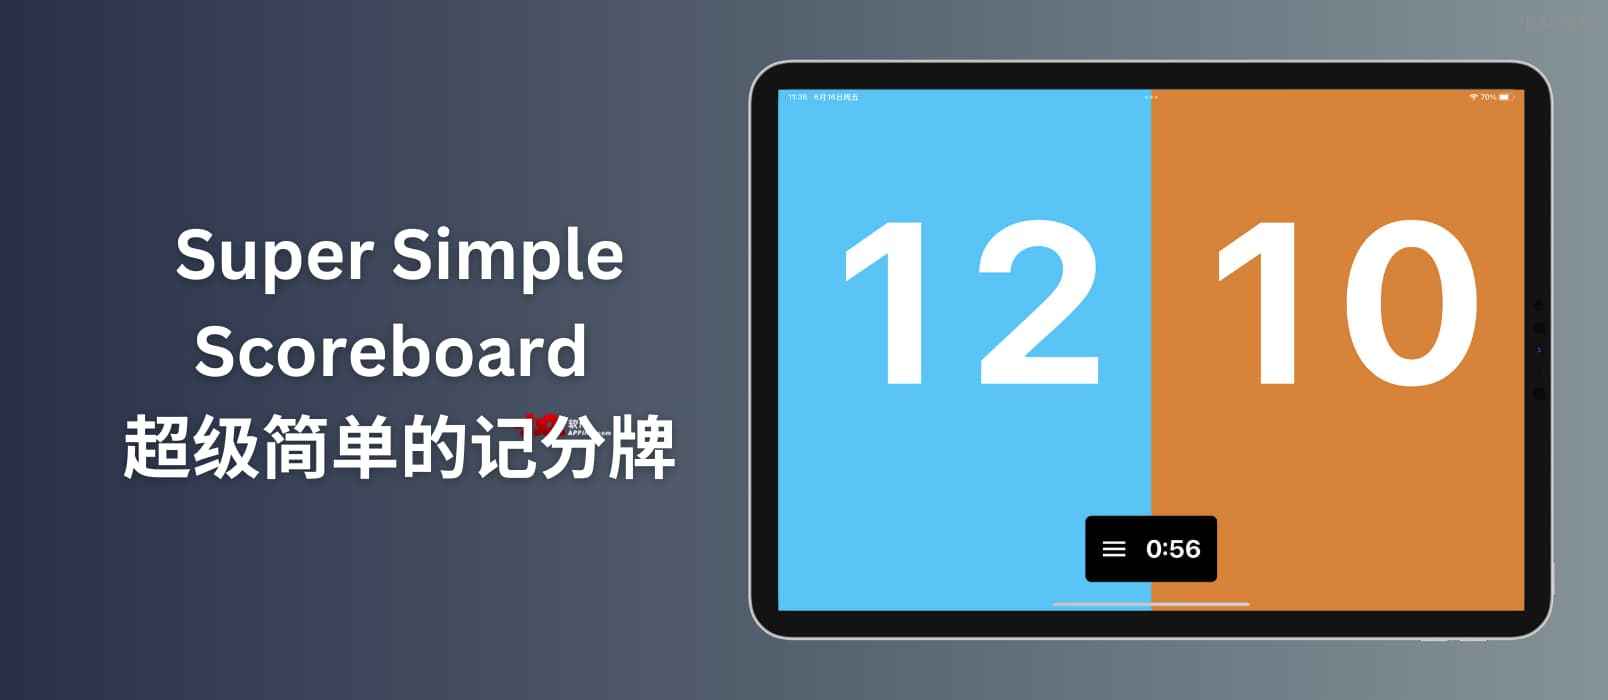 超级简单的记分牌 Super Simple Scoreboard – 只有280.2 KB 的家用记分牌[Apple]